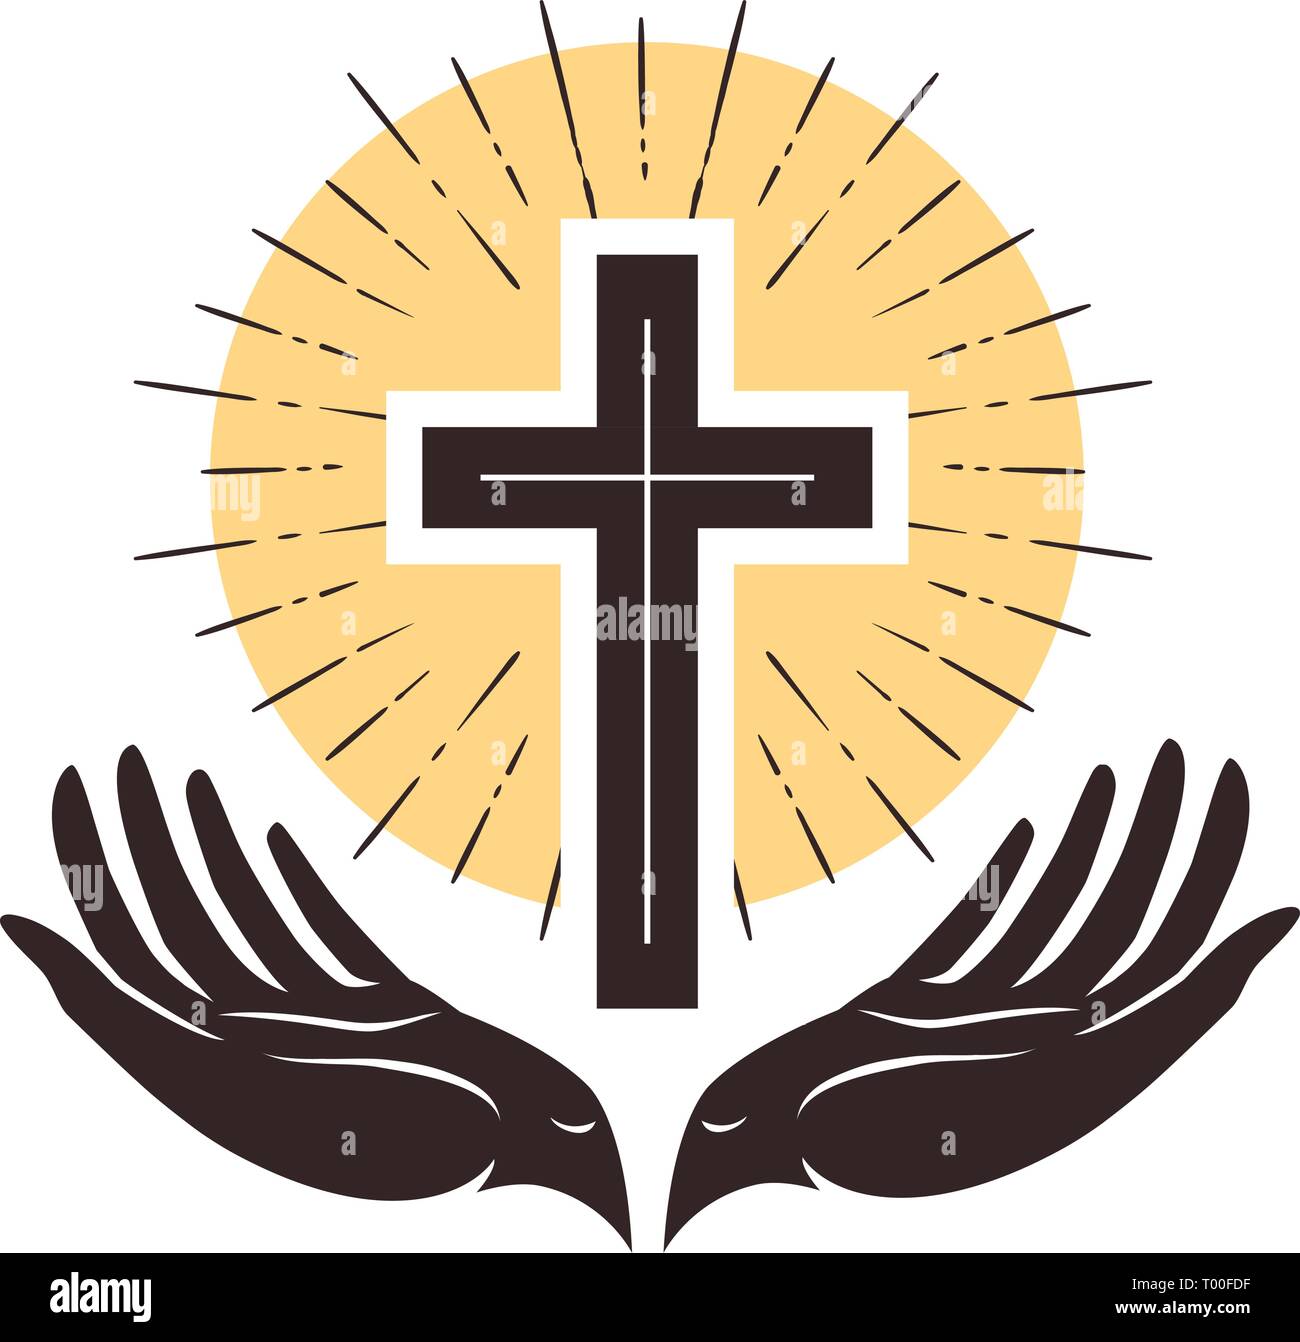 Kirche Logo. Kreuz und Hände, christliches Symbol. Vector Illustration Stock Vektor